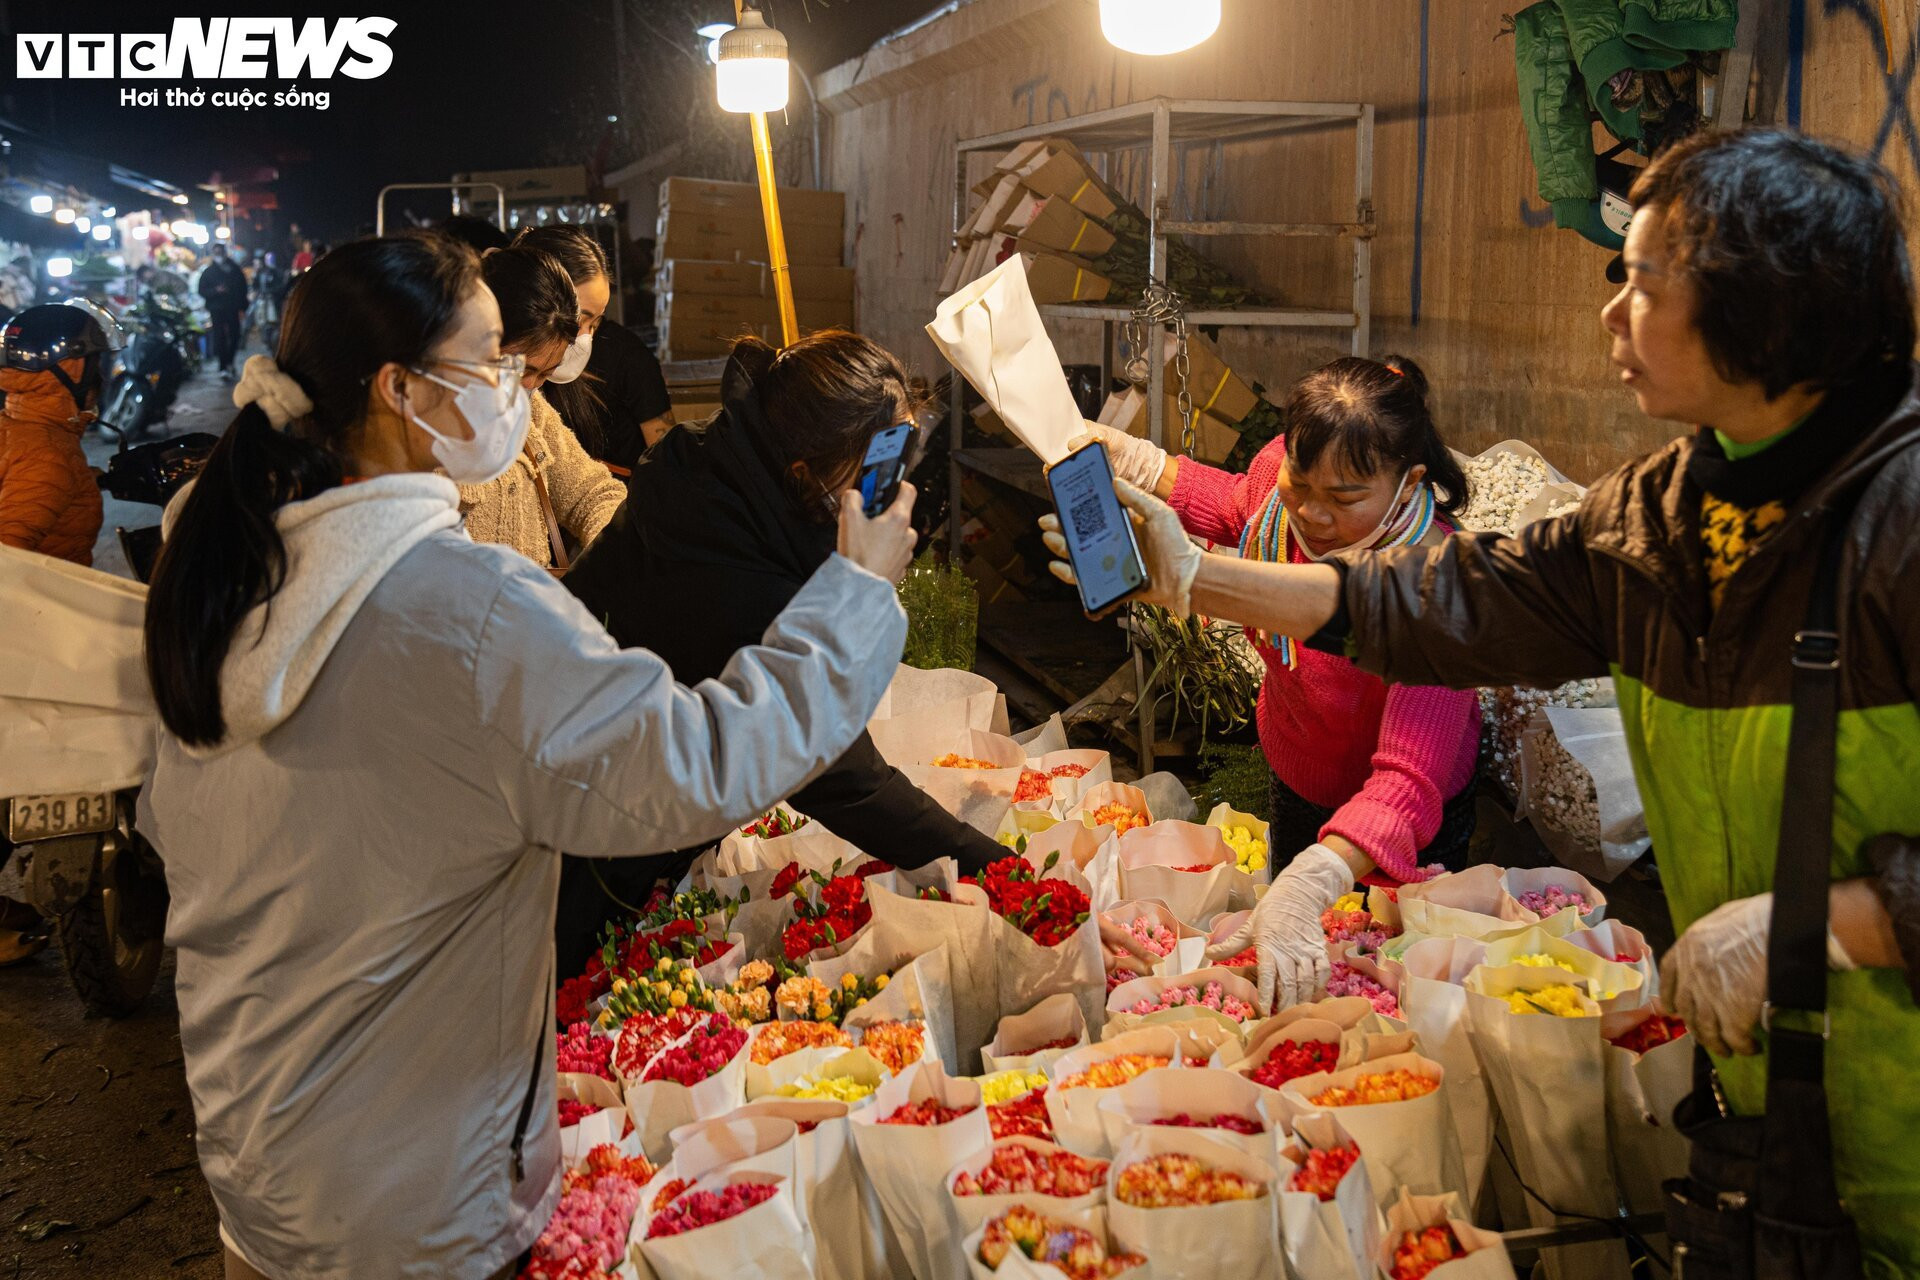 Chợ hoa tươi lớn nhất Hà Nội nhộn nhịp suốt đêm trước ngày 8/3 - 14